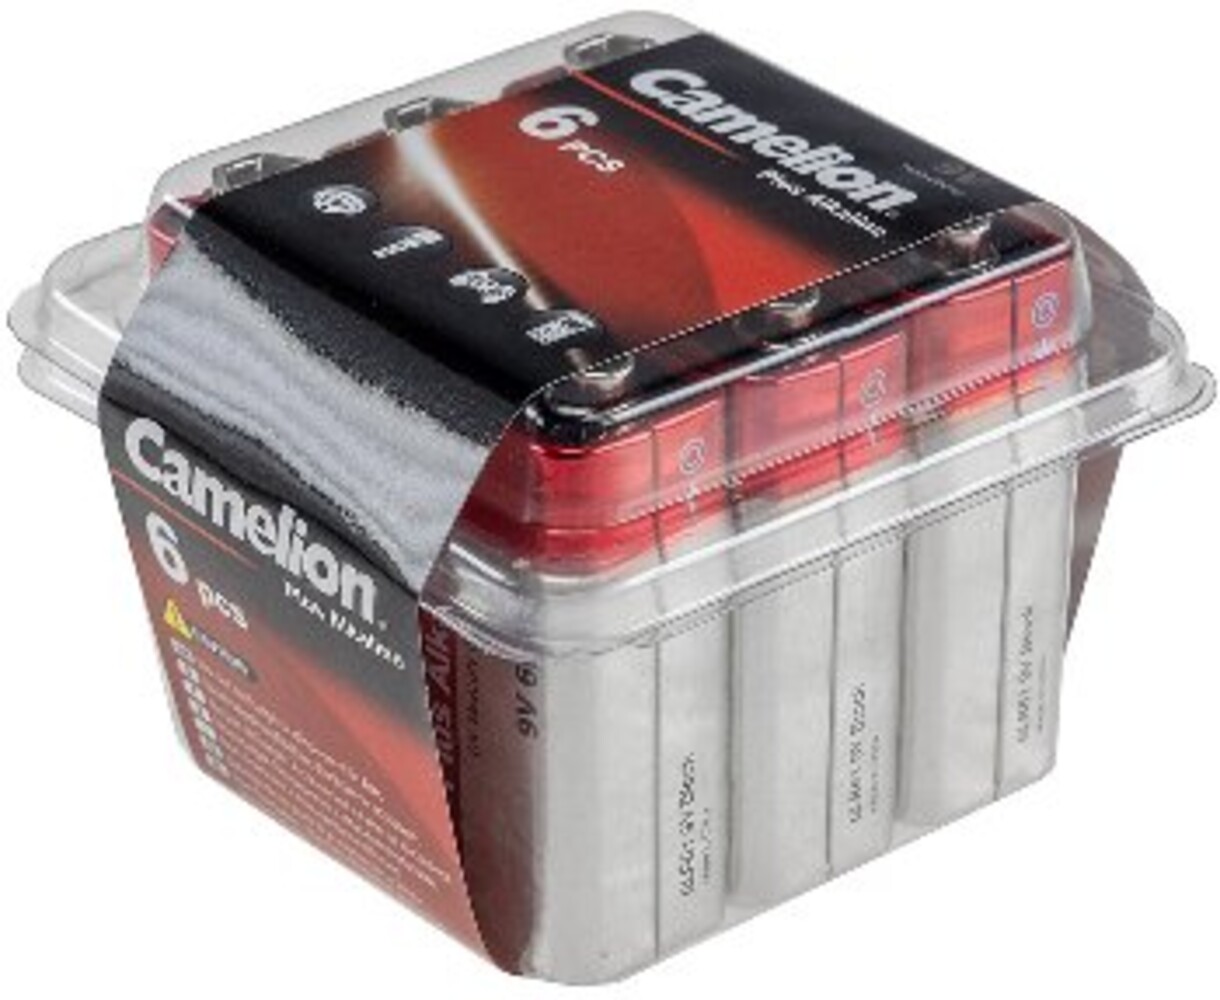 Sorgfältig verpackte Block-Batterien von der Marke ChiliTec in einer praktischen Haushaltsbox